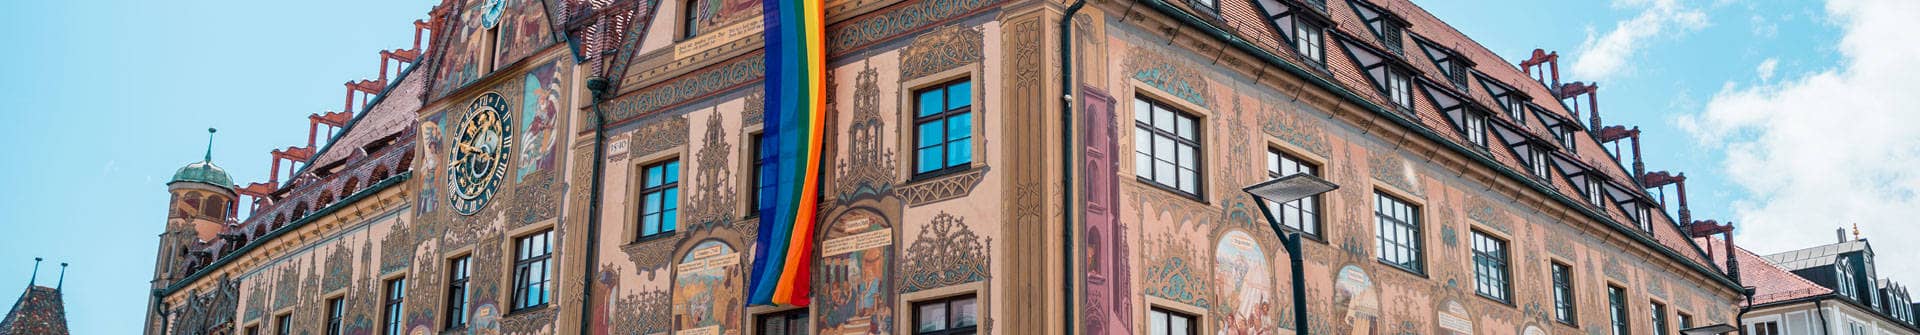 Ausschnitt des historischen Gebäudes des Ulmer Rathauses mit seiner astronomischen Uhr und einer Regenbogenfahne.